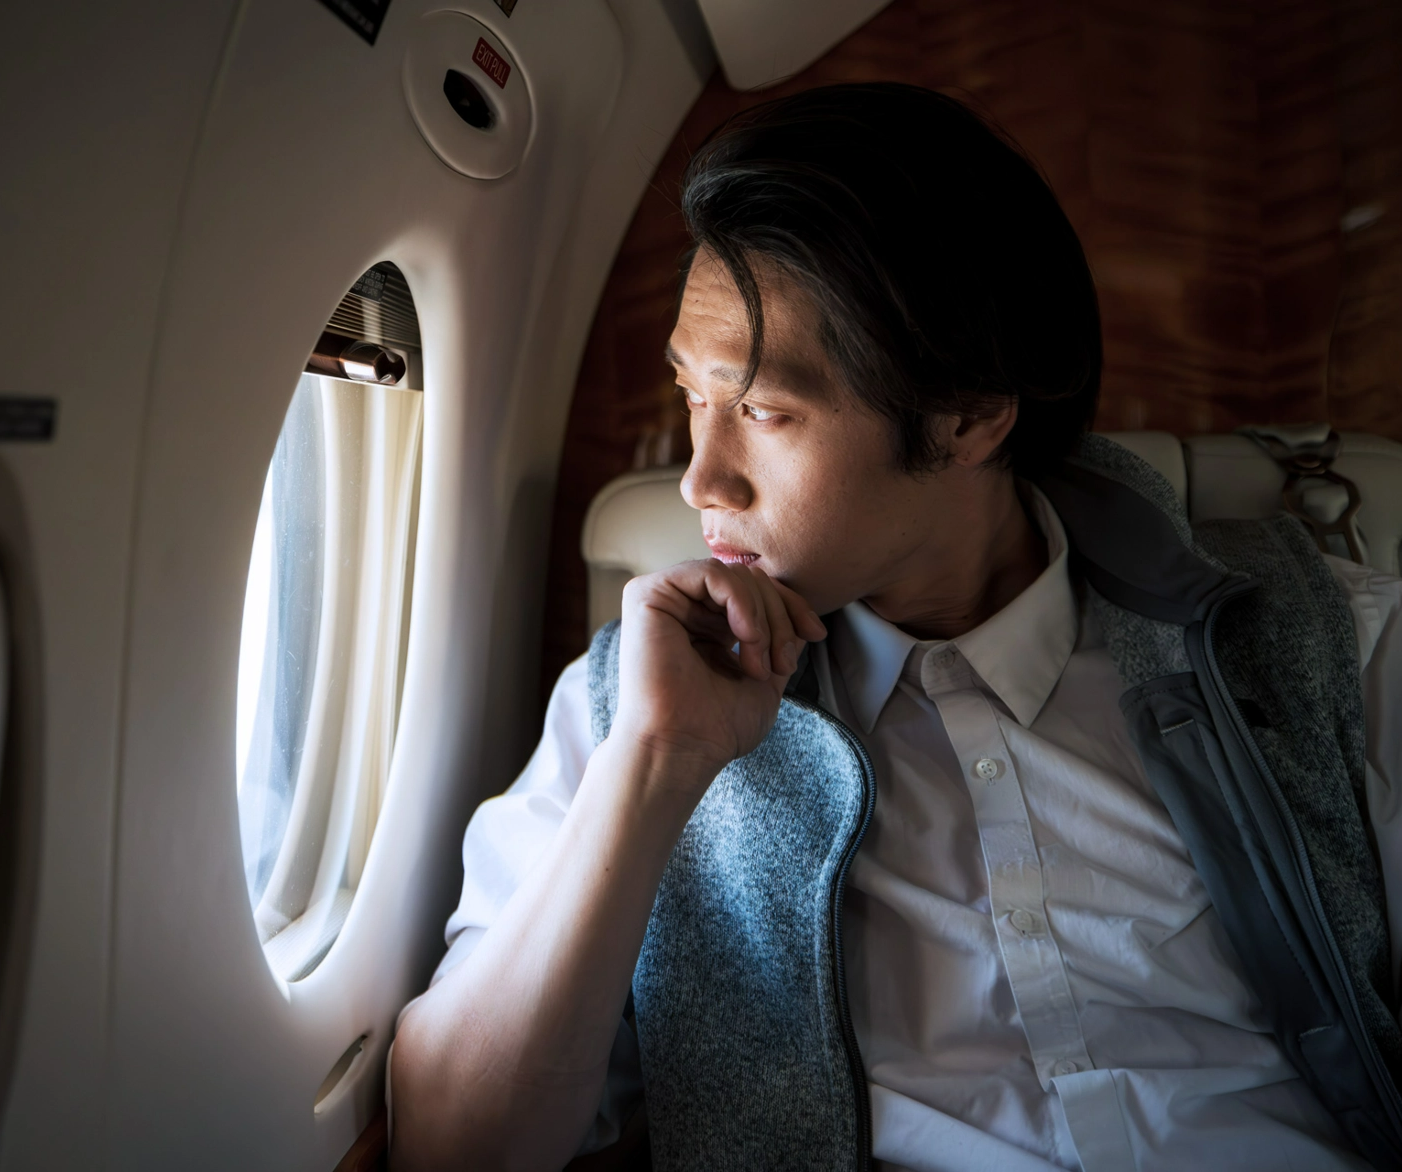 #BradescoAcessivel #ParaTodoMundoVer: um homem sentado olha para a janela do seu
      jato particular em voo.
      